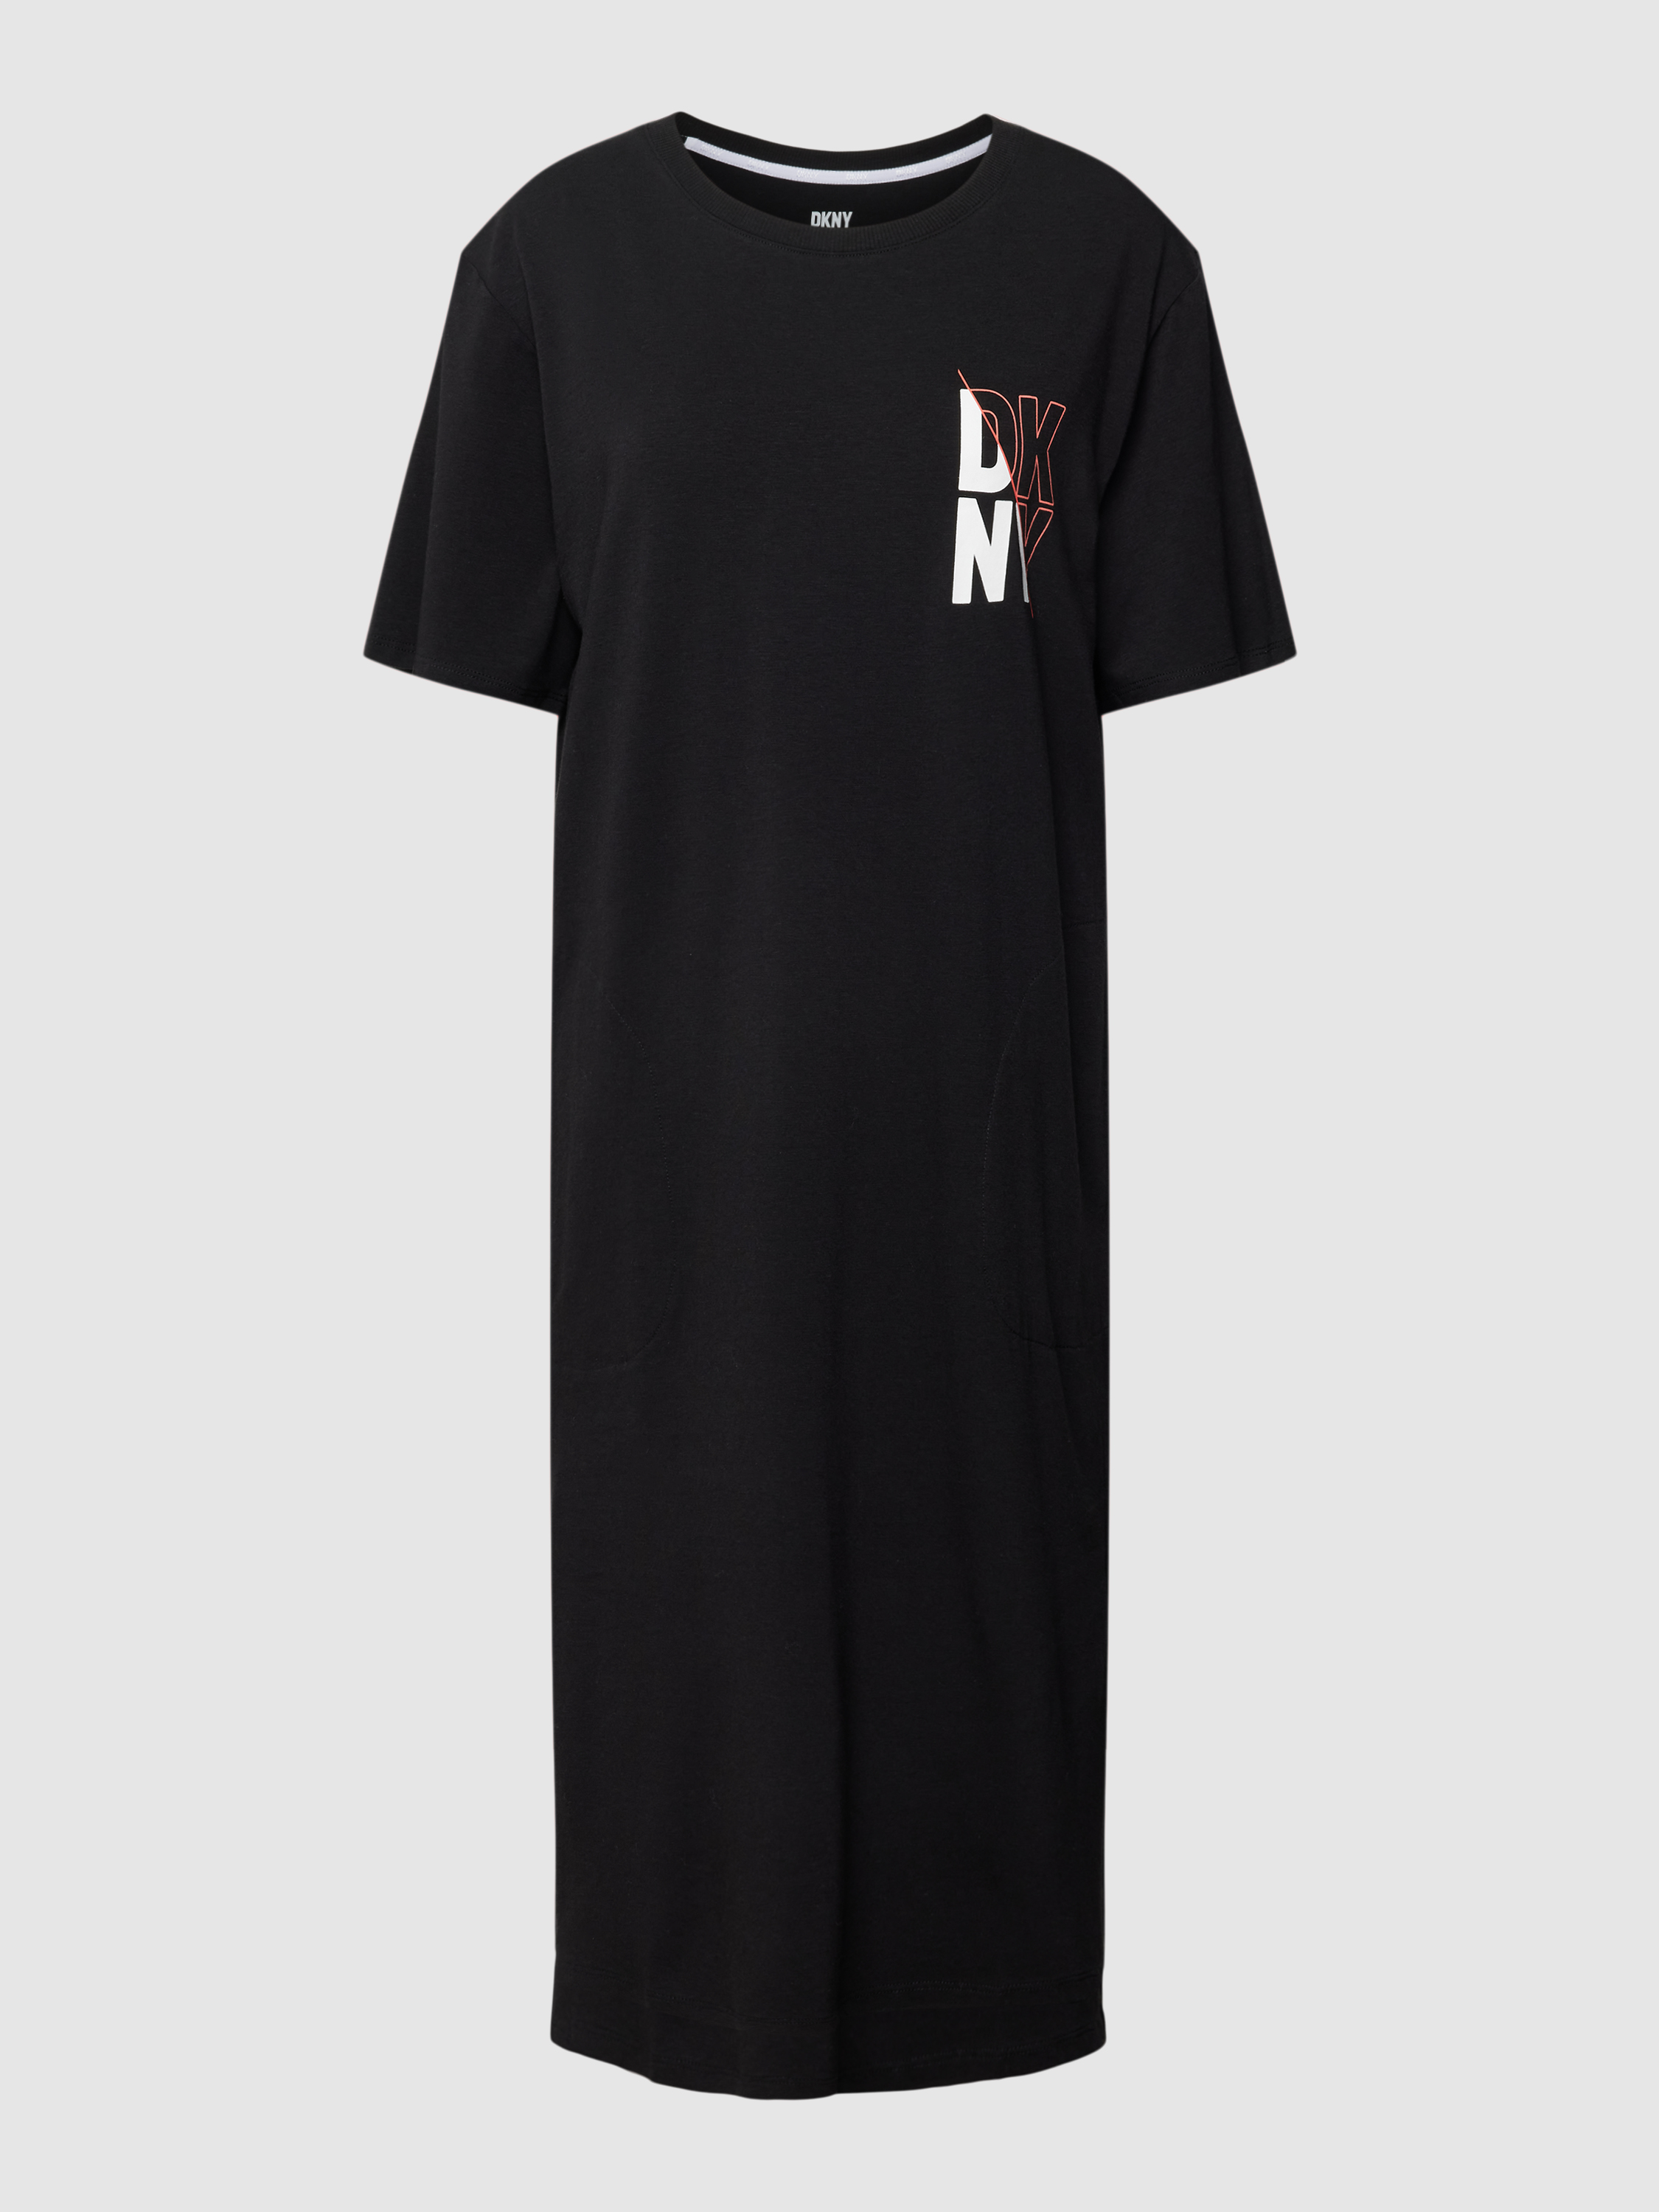 Платье домашнее женское DKNY 1785739 черное S (доставка из-за рубежа)